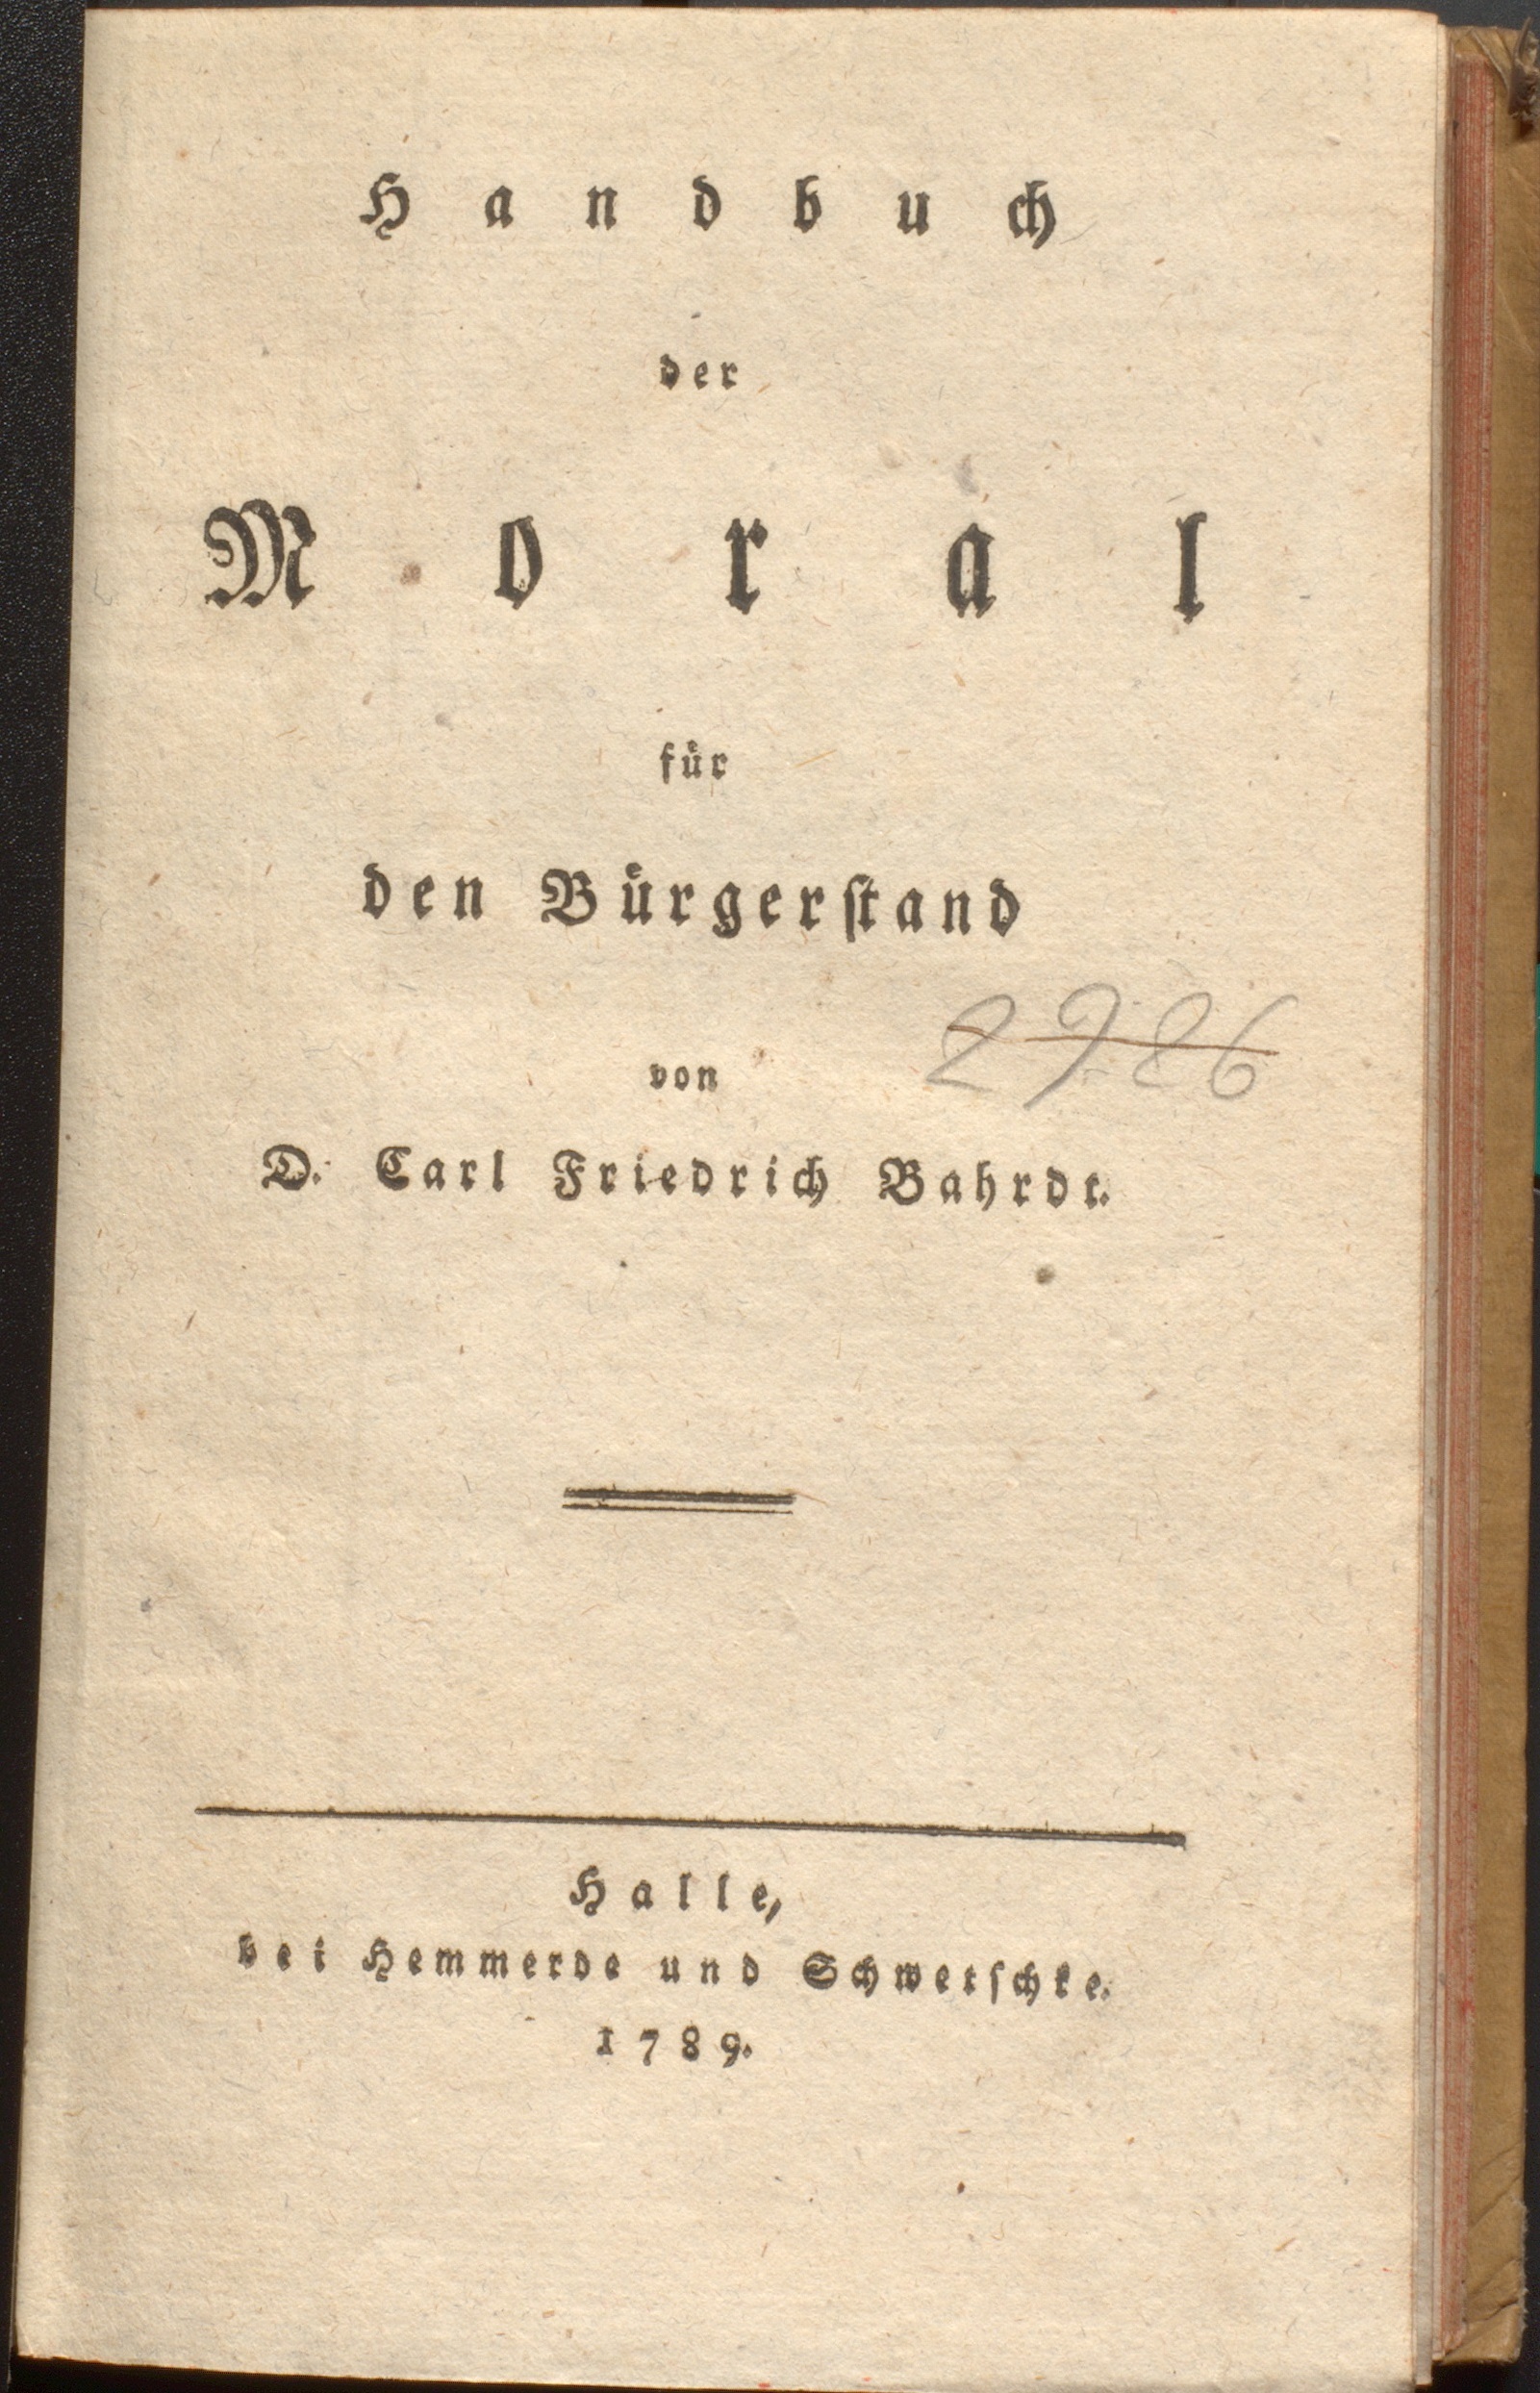 Handbuch der Moral für den Bürgerstand von D. Carl Friedrich Bahrdt (GLEIMHAUS  Museum der deutschen Aufklärung CC BY-NC-SA)